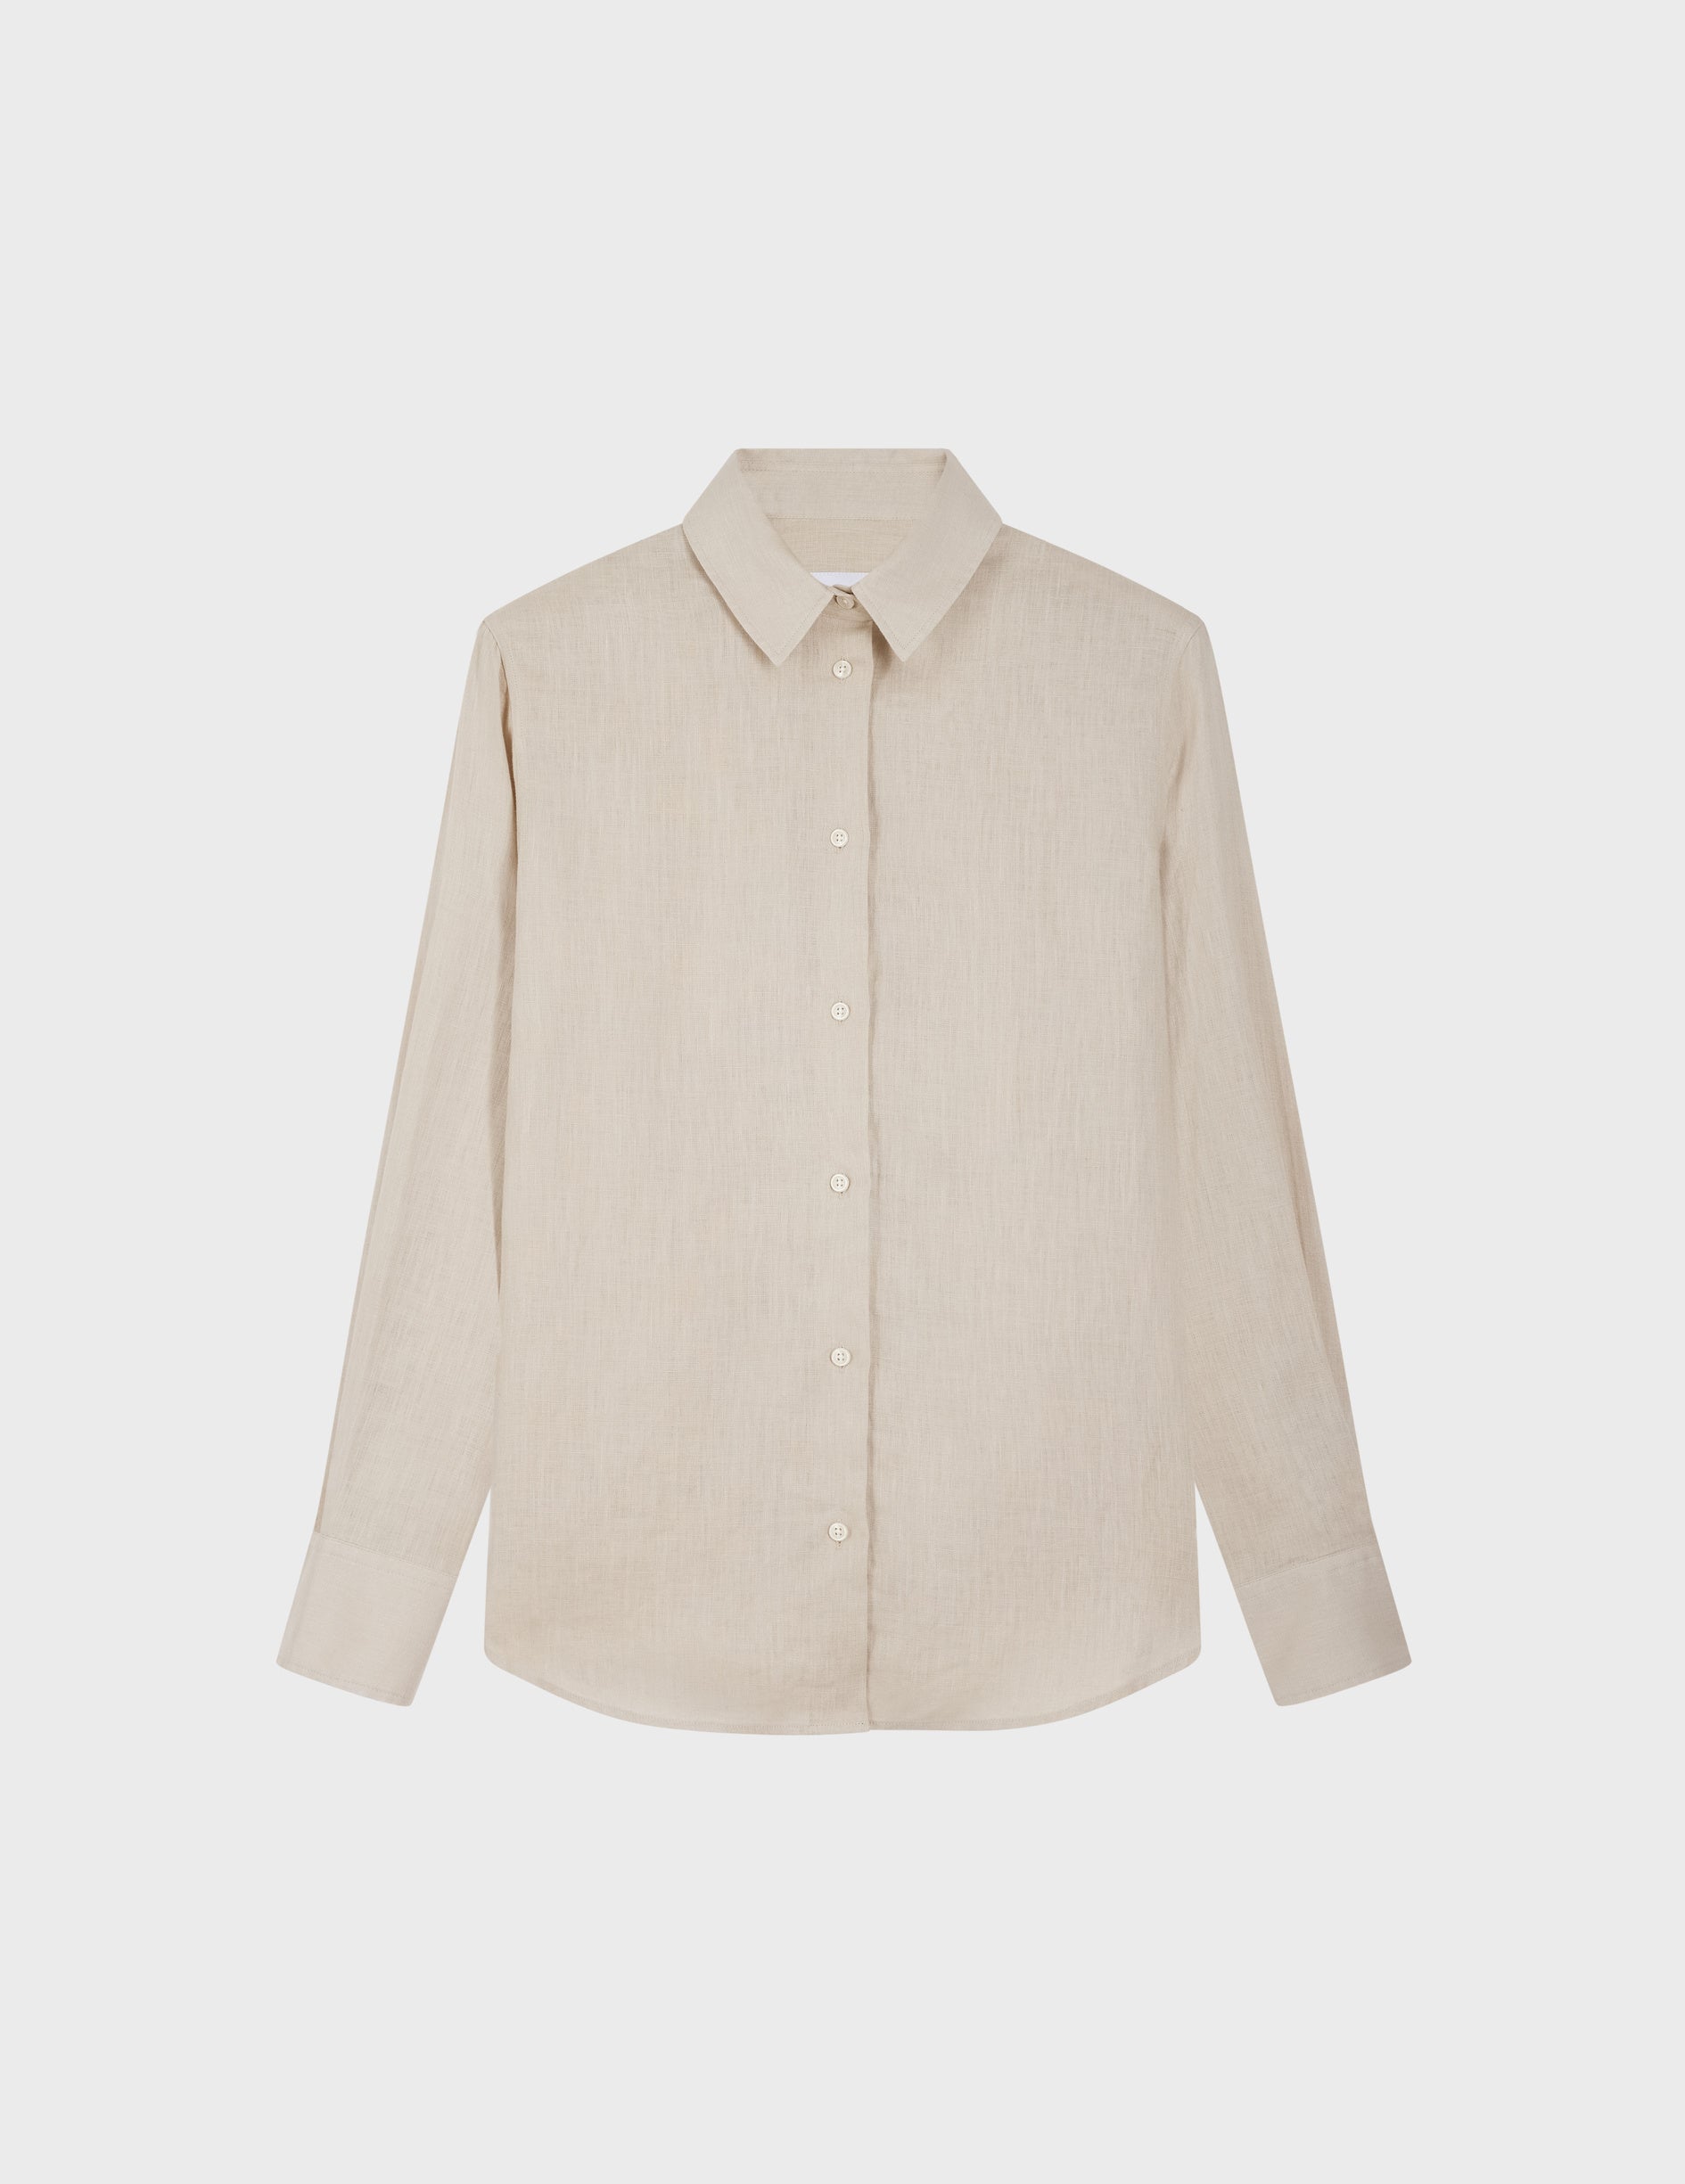 Marion shirt in beige linen - Linen - Shirt Collar